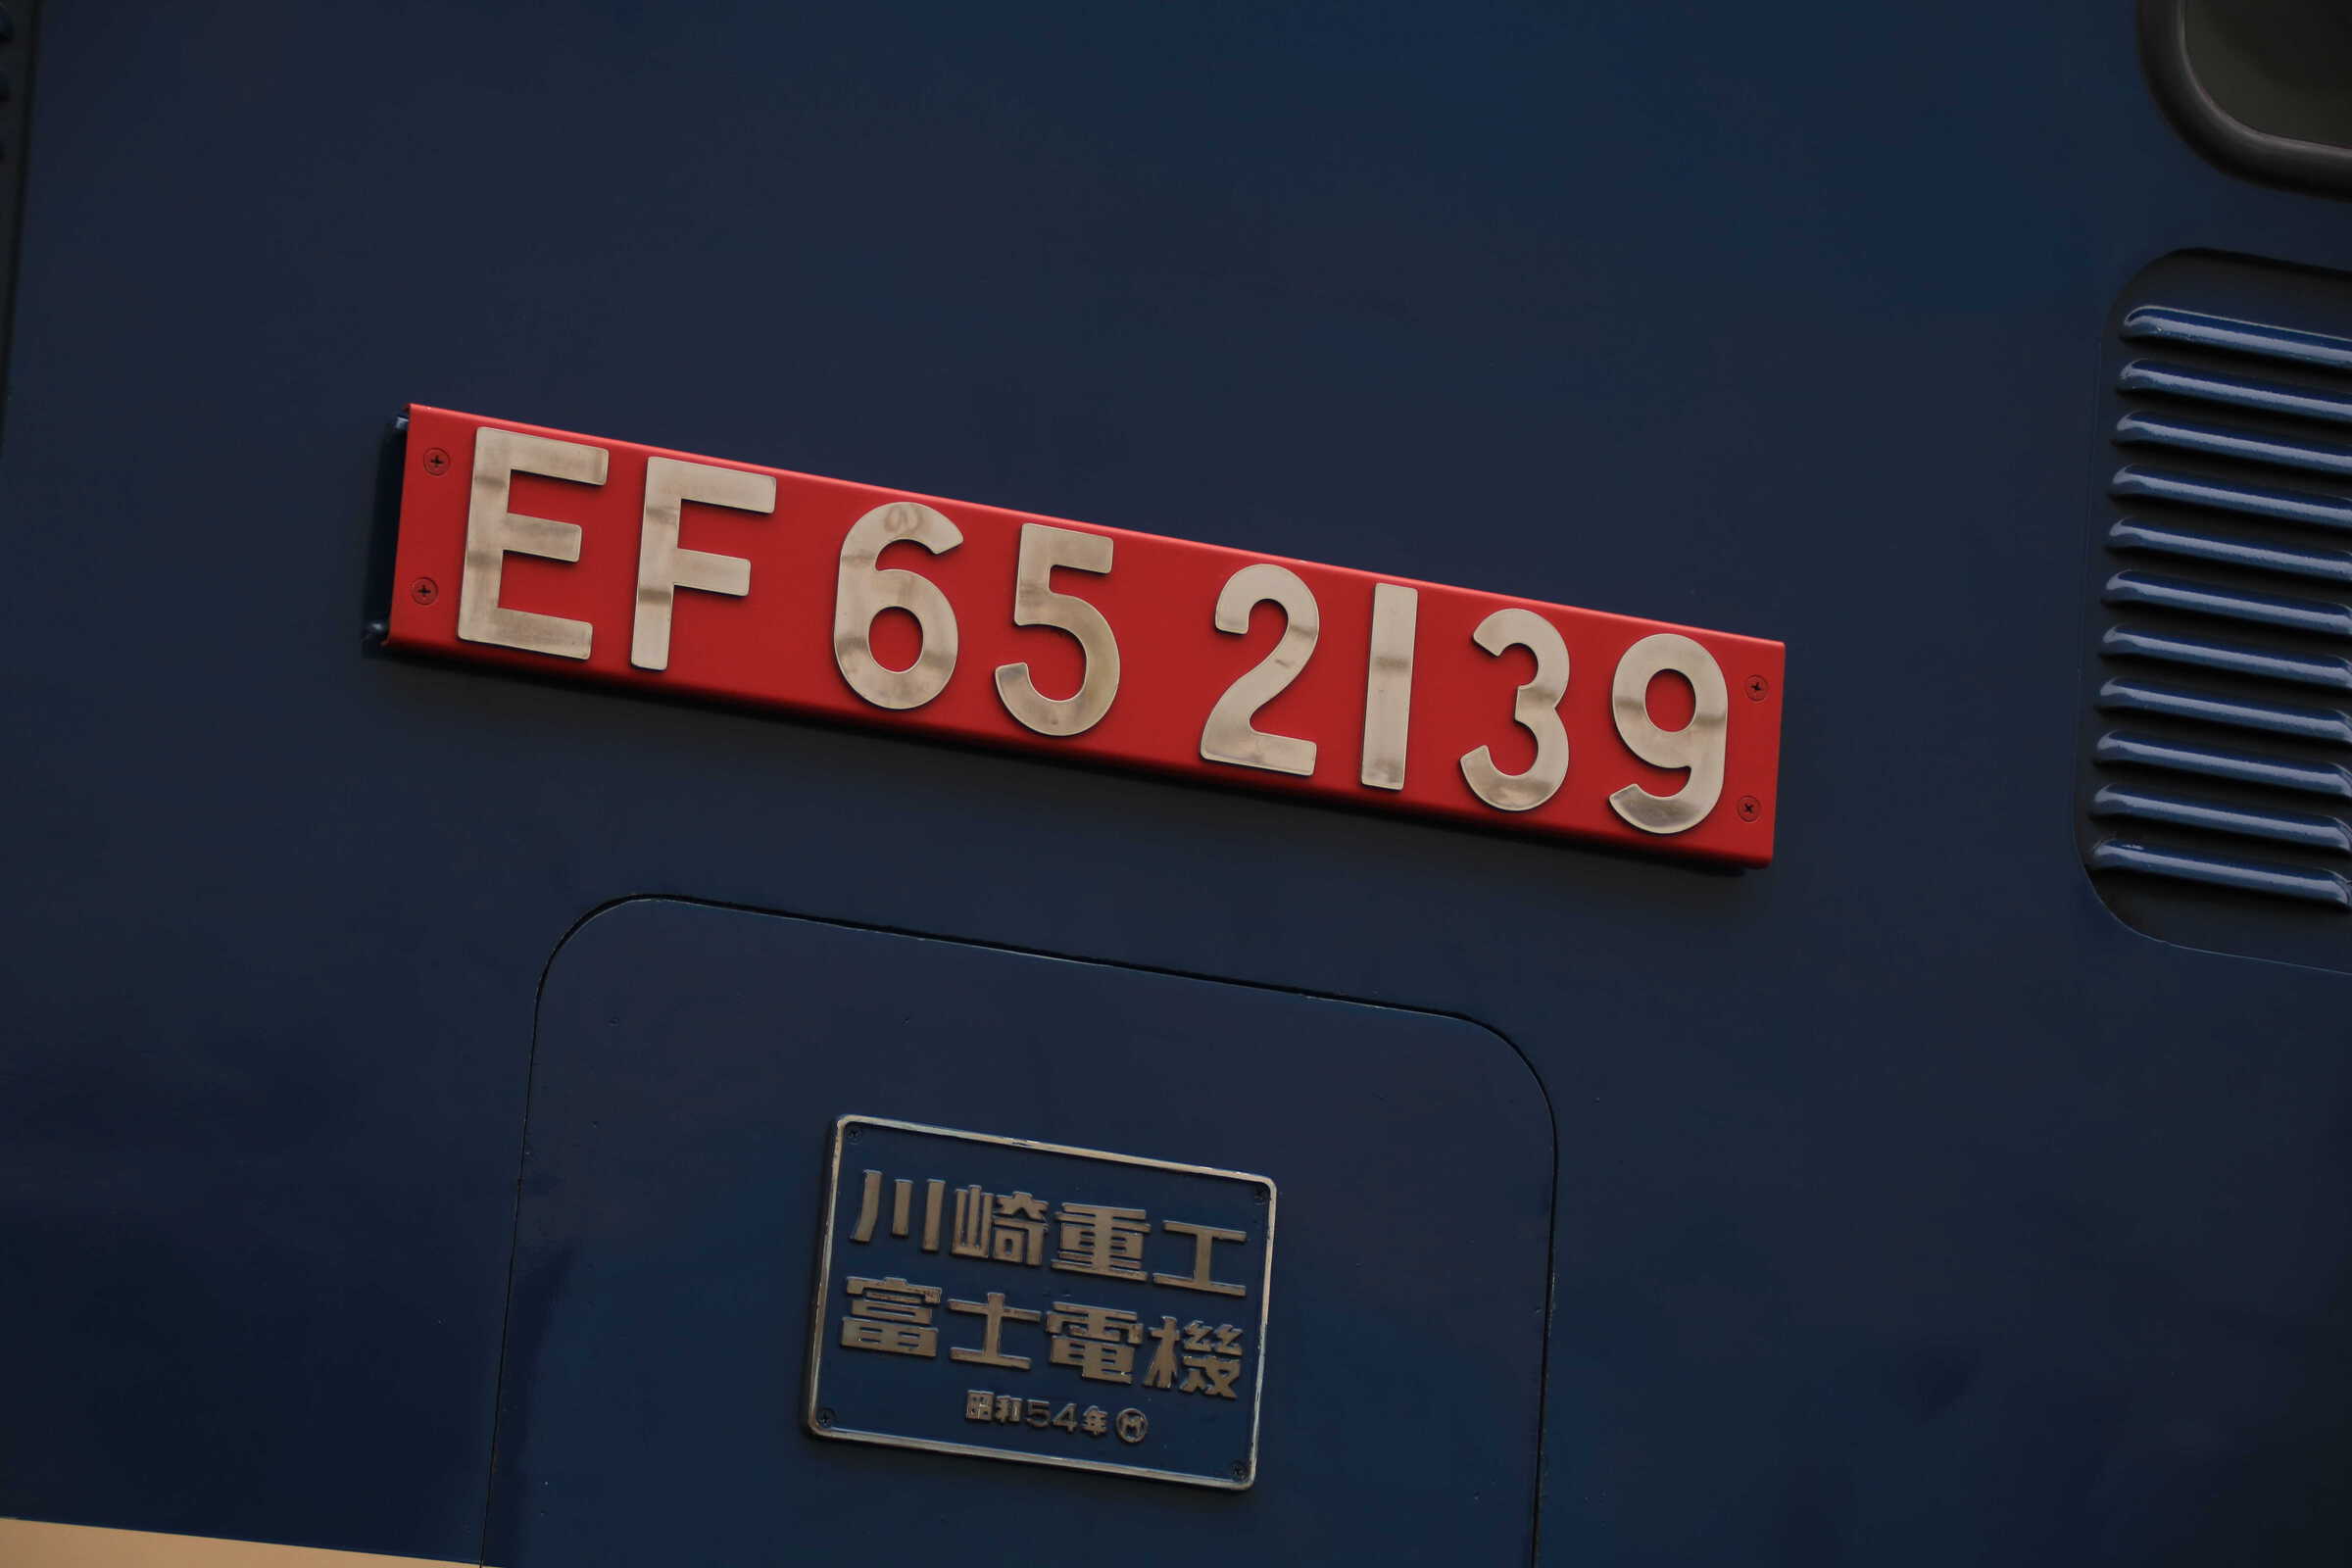 EF65-2139